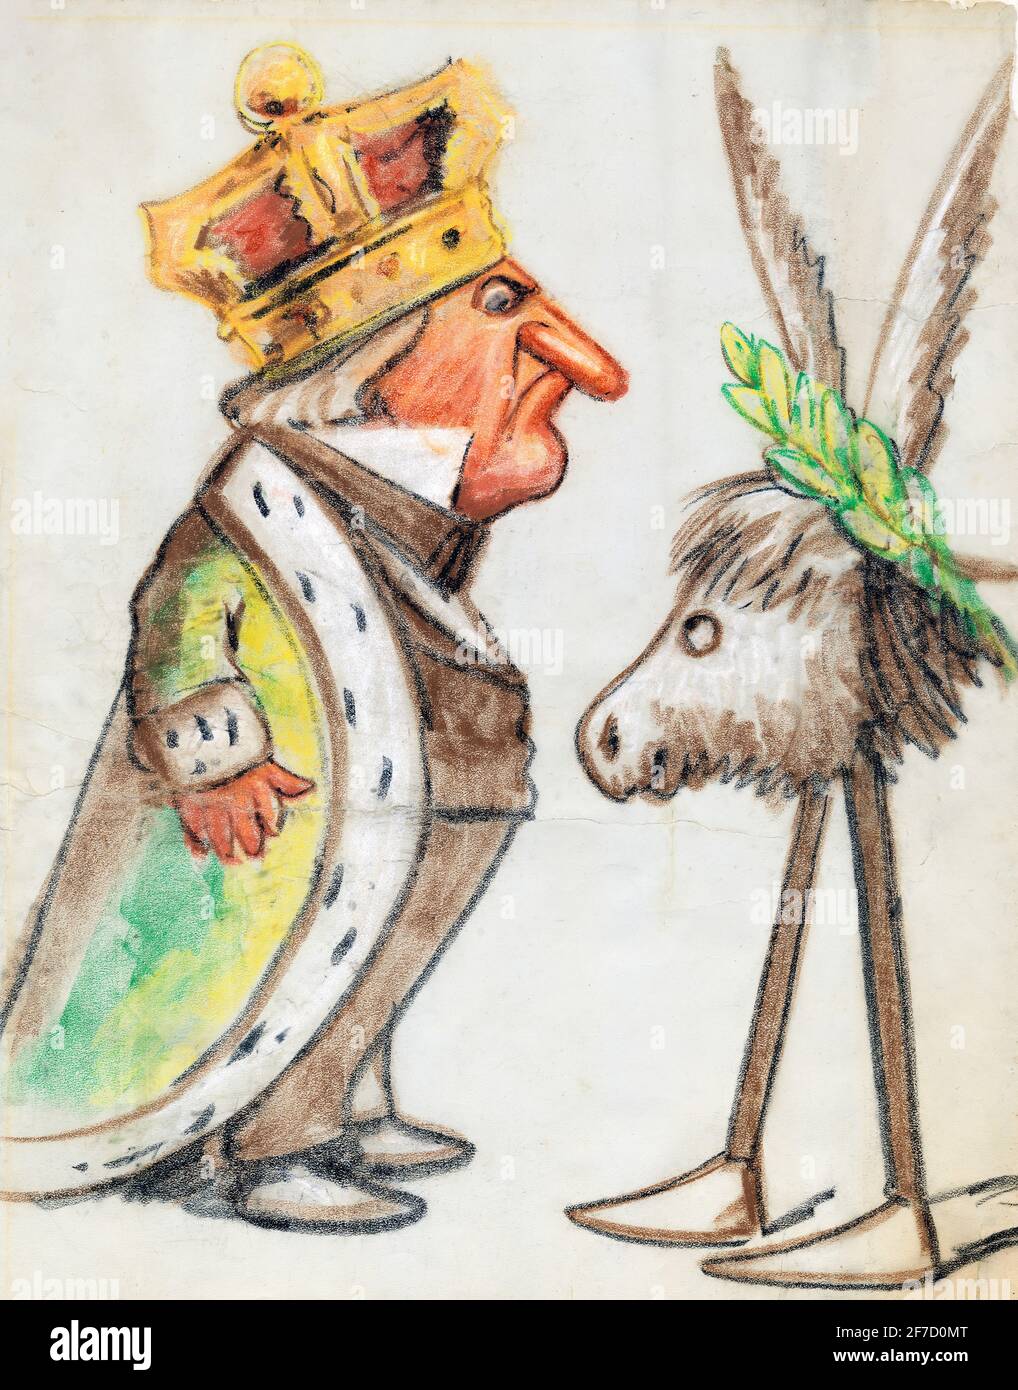 Caricatura del presidente estadounidense, Andrew Johnson, por el caricaturista y caricaturista estadounidense Thomas Nast (1840-1902), pastel sobre papel, 1873 Foto de stock